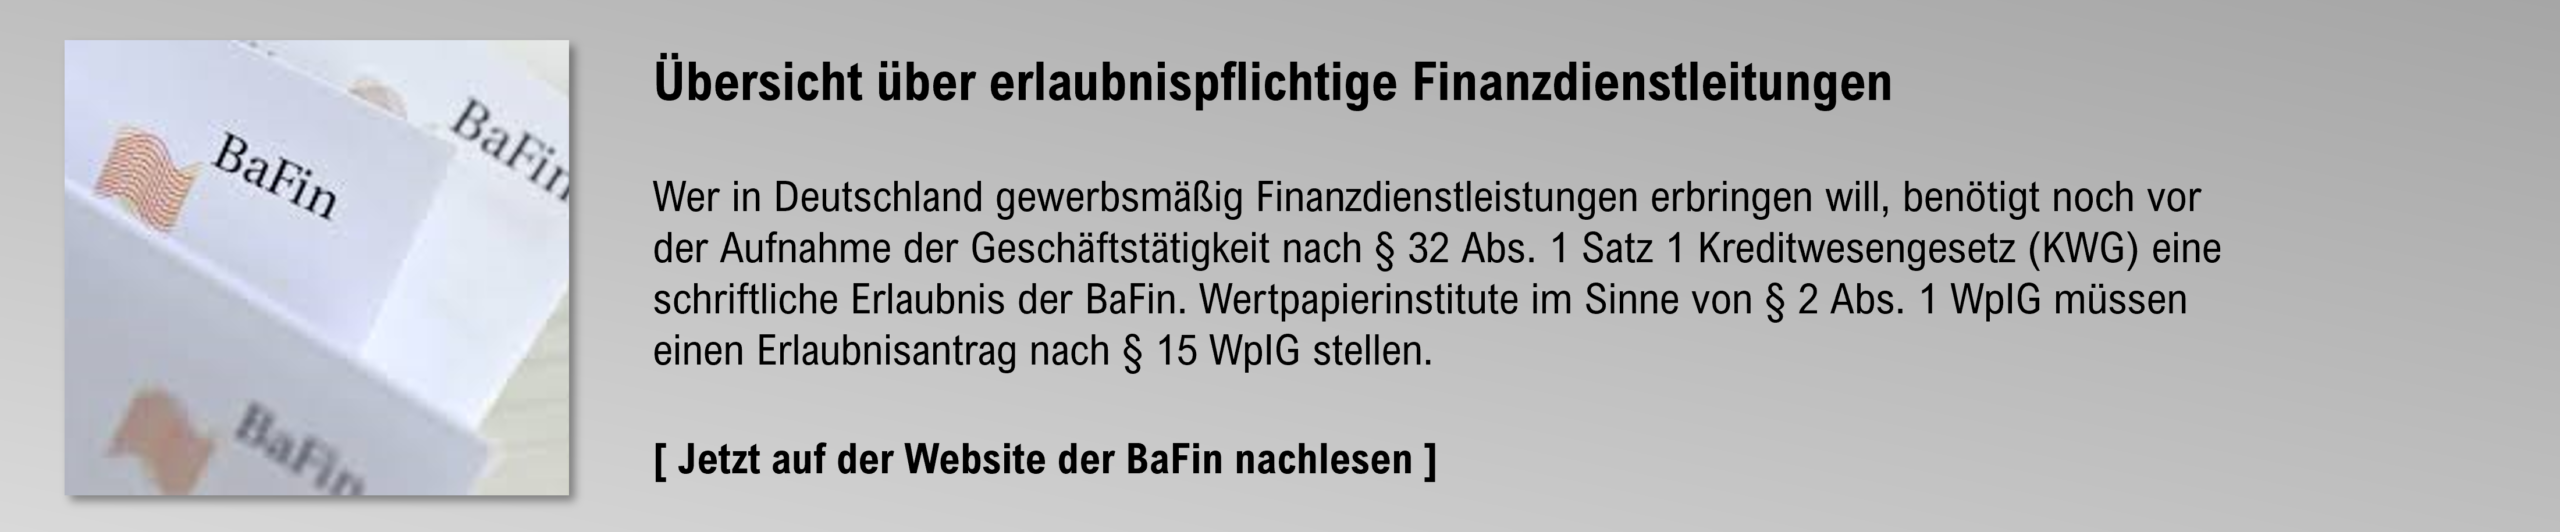 BaFin - Definition Wertpapierinstitut und Haftungsdach für vertraglich gebundene Vermittler (Vermögensverwalter, Anlageberater und -vermittler)